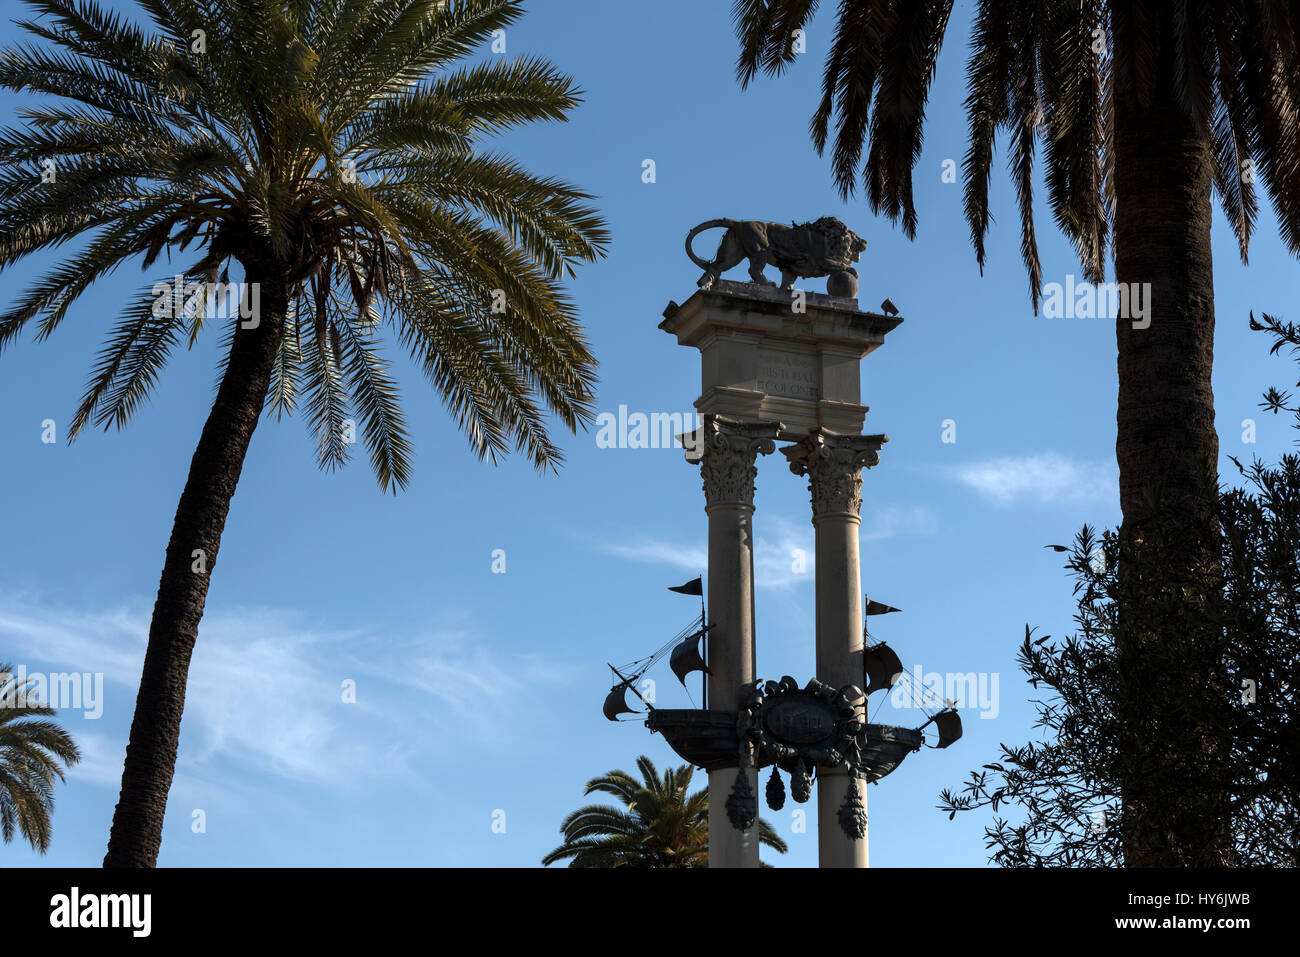 Monument à Christophe Colomb avec un modèle détaillé de son navire, le Santa Maria dans les jardins de Murillo à Séville, Andalousie, province de l'Espagne. Banque D'Images